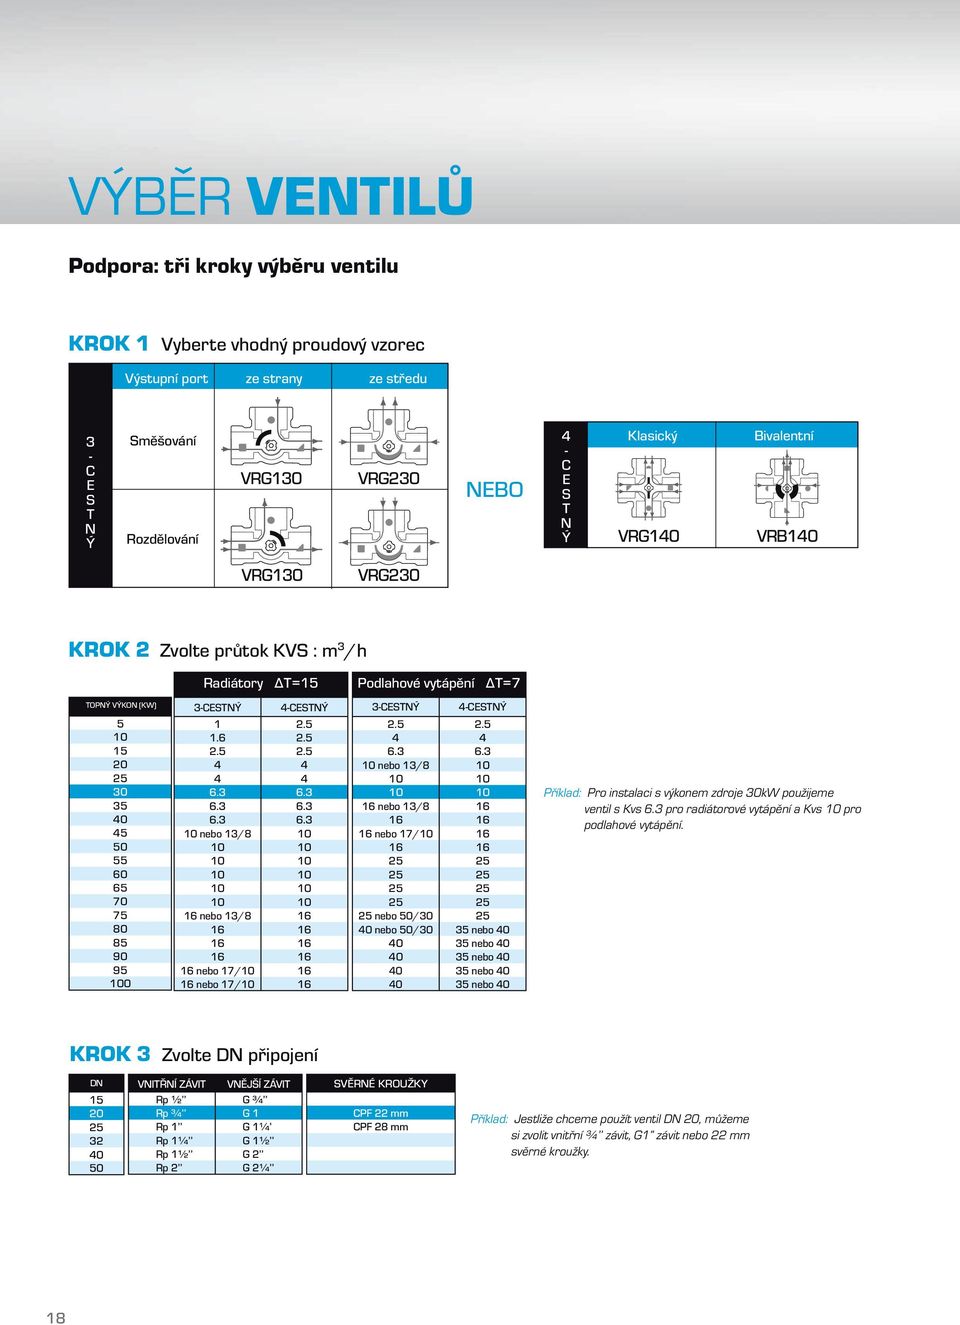 10 16 16 16 16 16 16 40 40 40 40 Příklad: Pro instalaci s výkonem zdroje 30kW použijeme ventil s Kvs 6.